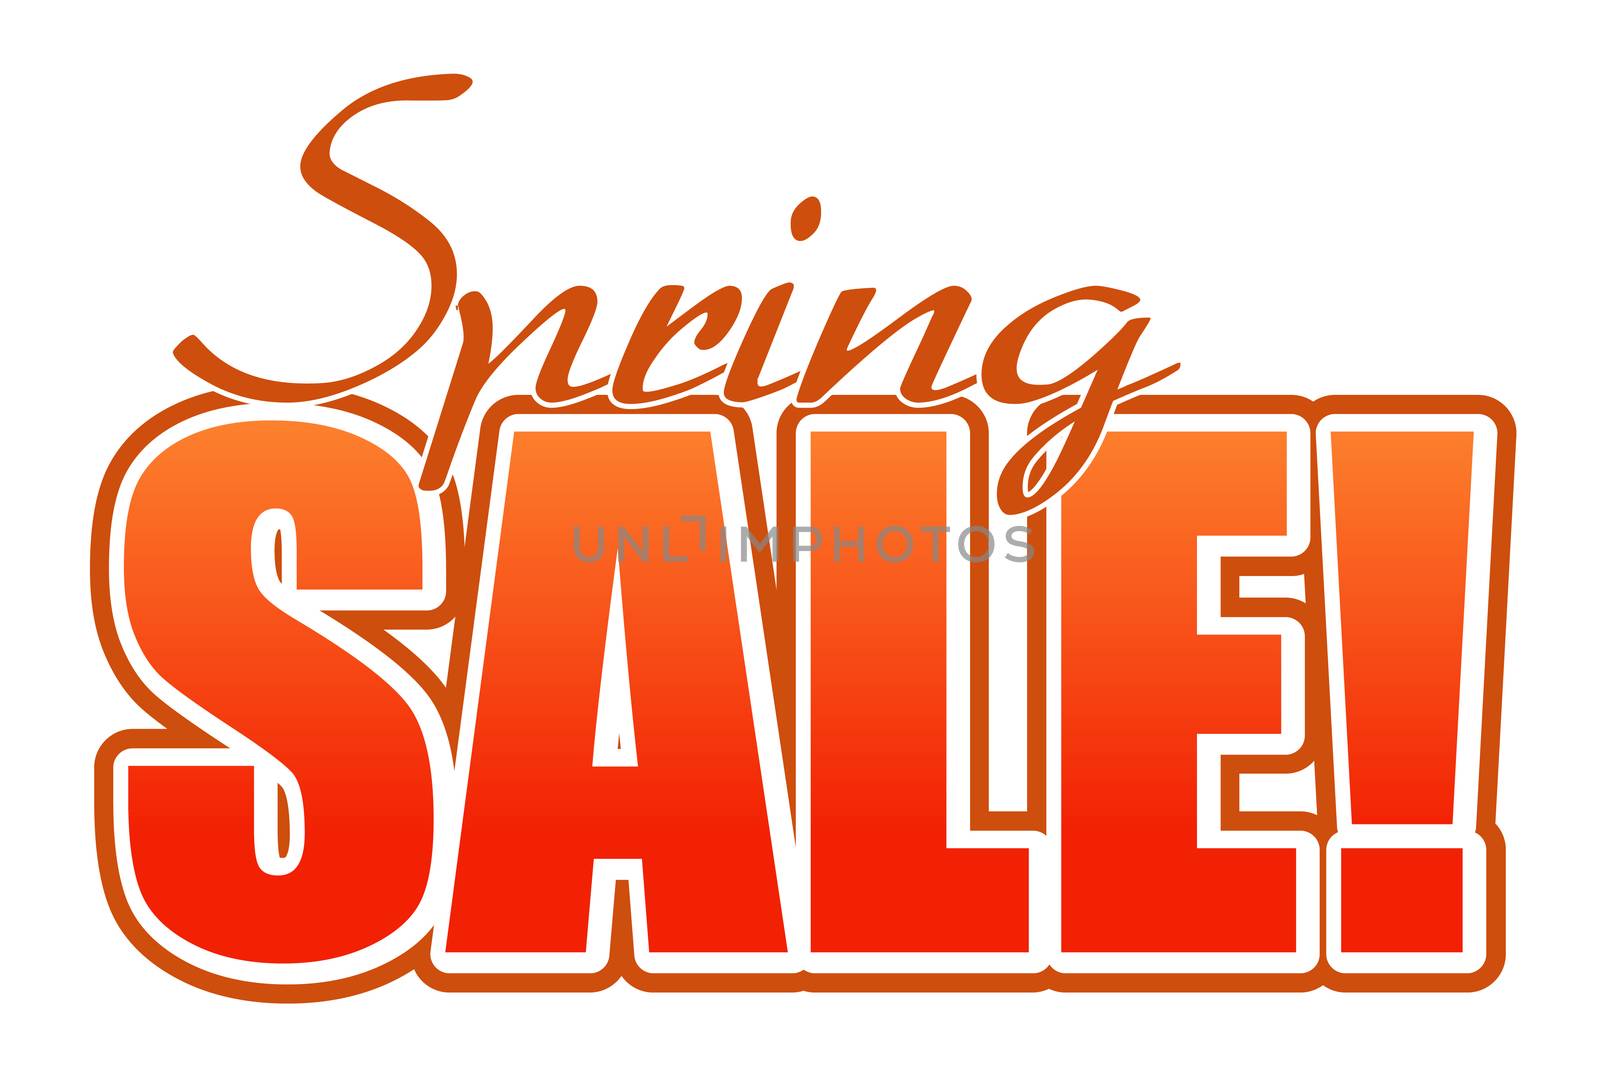 spring sale orange illustration sign over white background